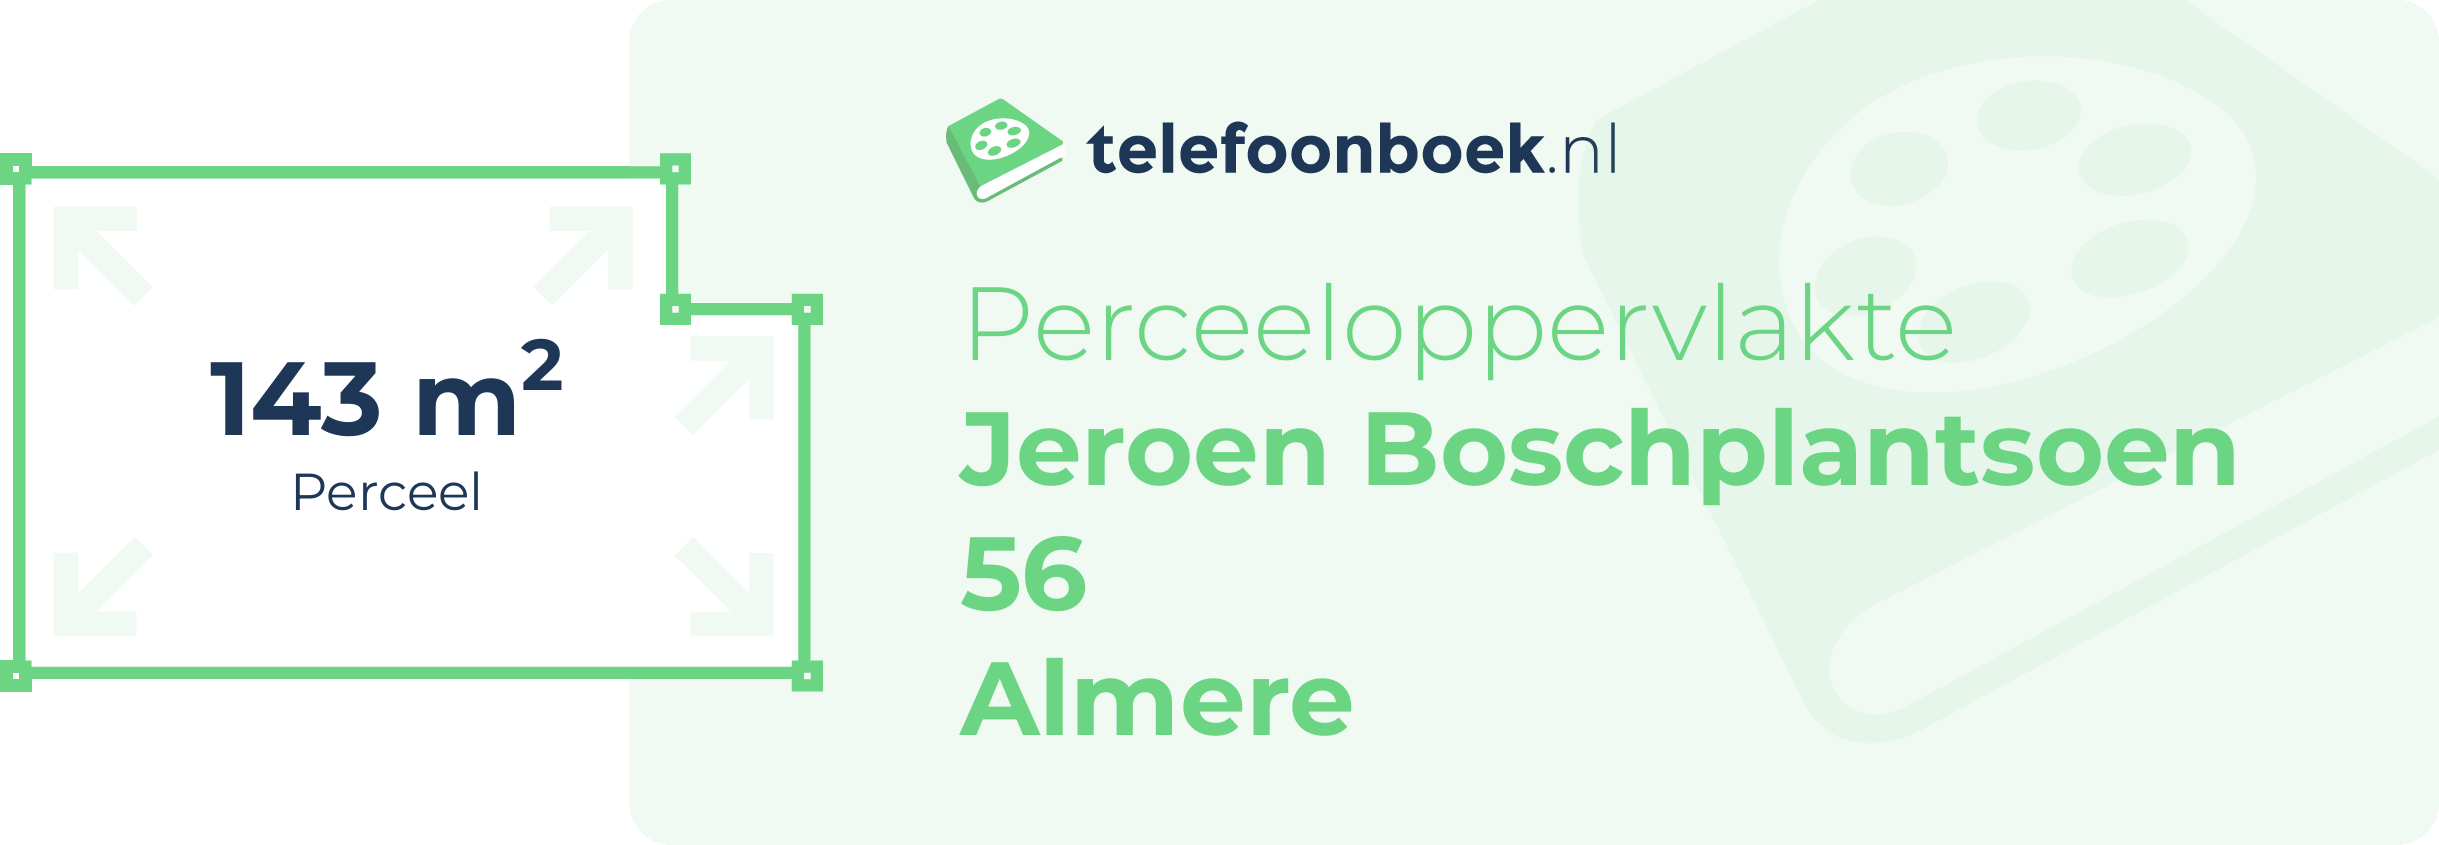 Perceeloppervlakte Jeroen Boschplantsoen 56 Almere